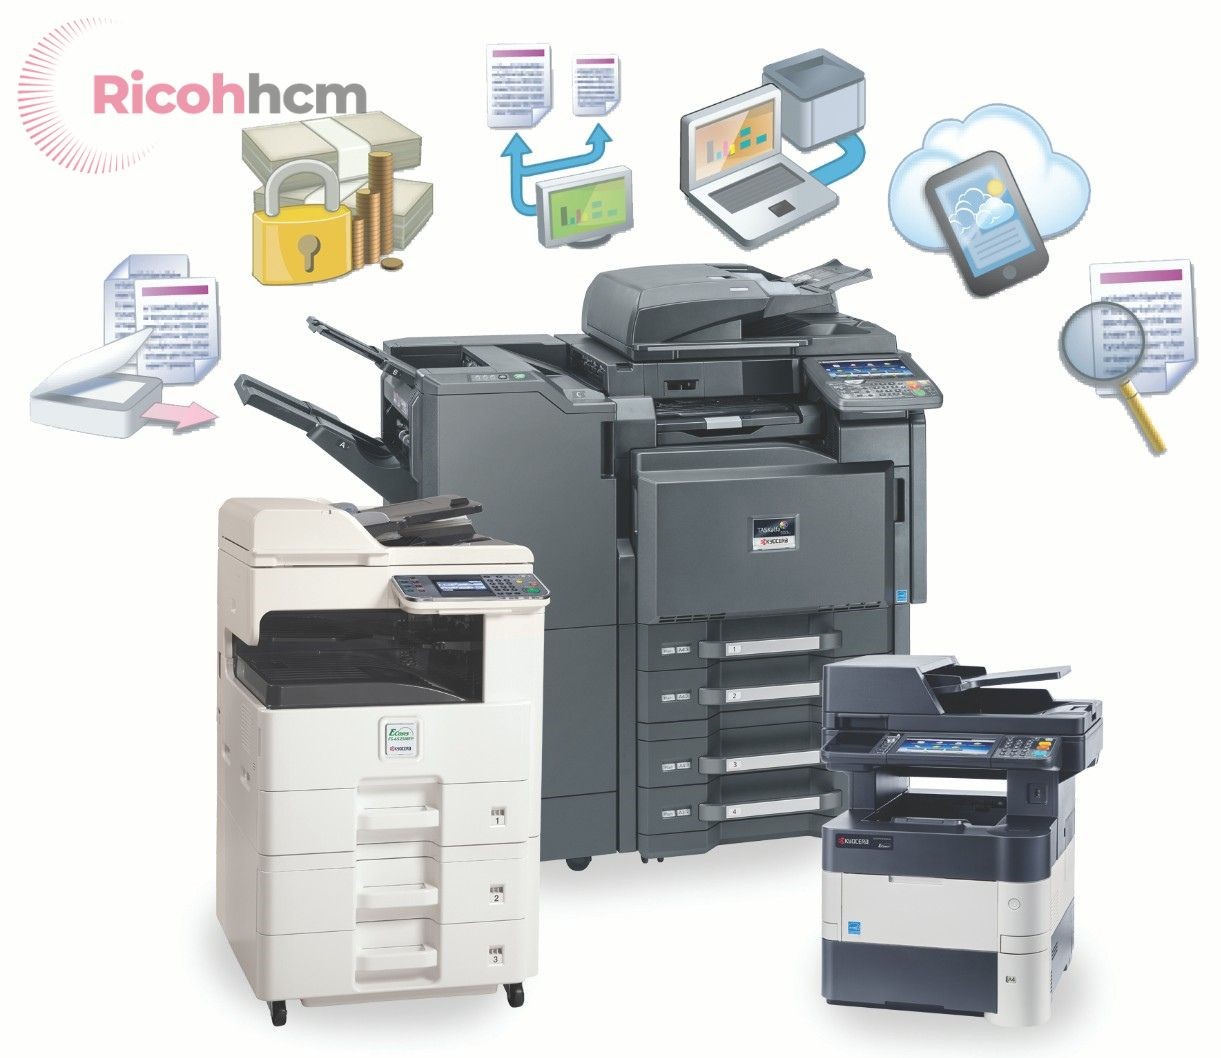 Nhìn vẻ ngoài máy có thể còn rất mới, nhưng chất lượng in ấn lại không cao. Do đó, khi đến cửa hàng bán máy photocopy tại quận 10 , bạn cần yêu cầu nhân viên thử chất lượng bản in.